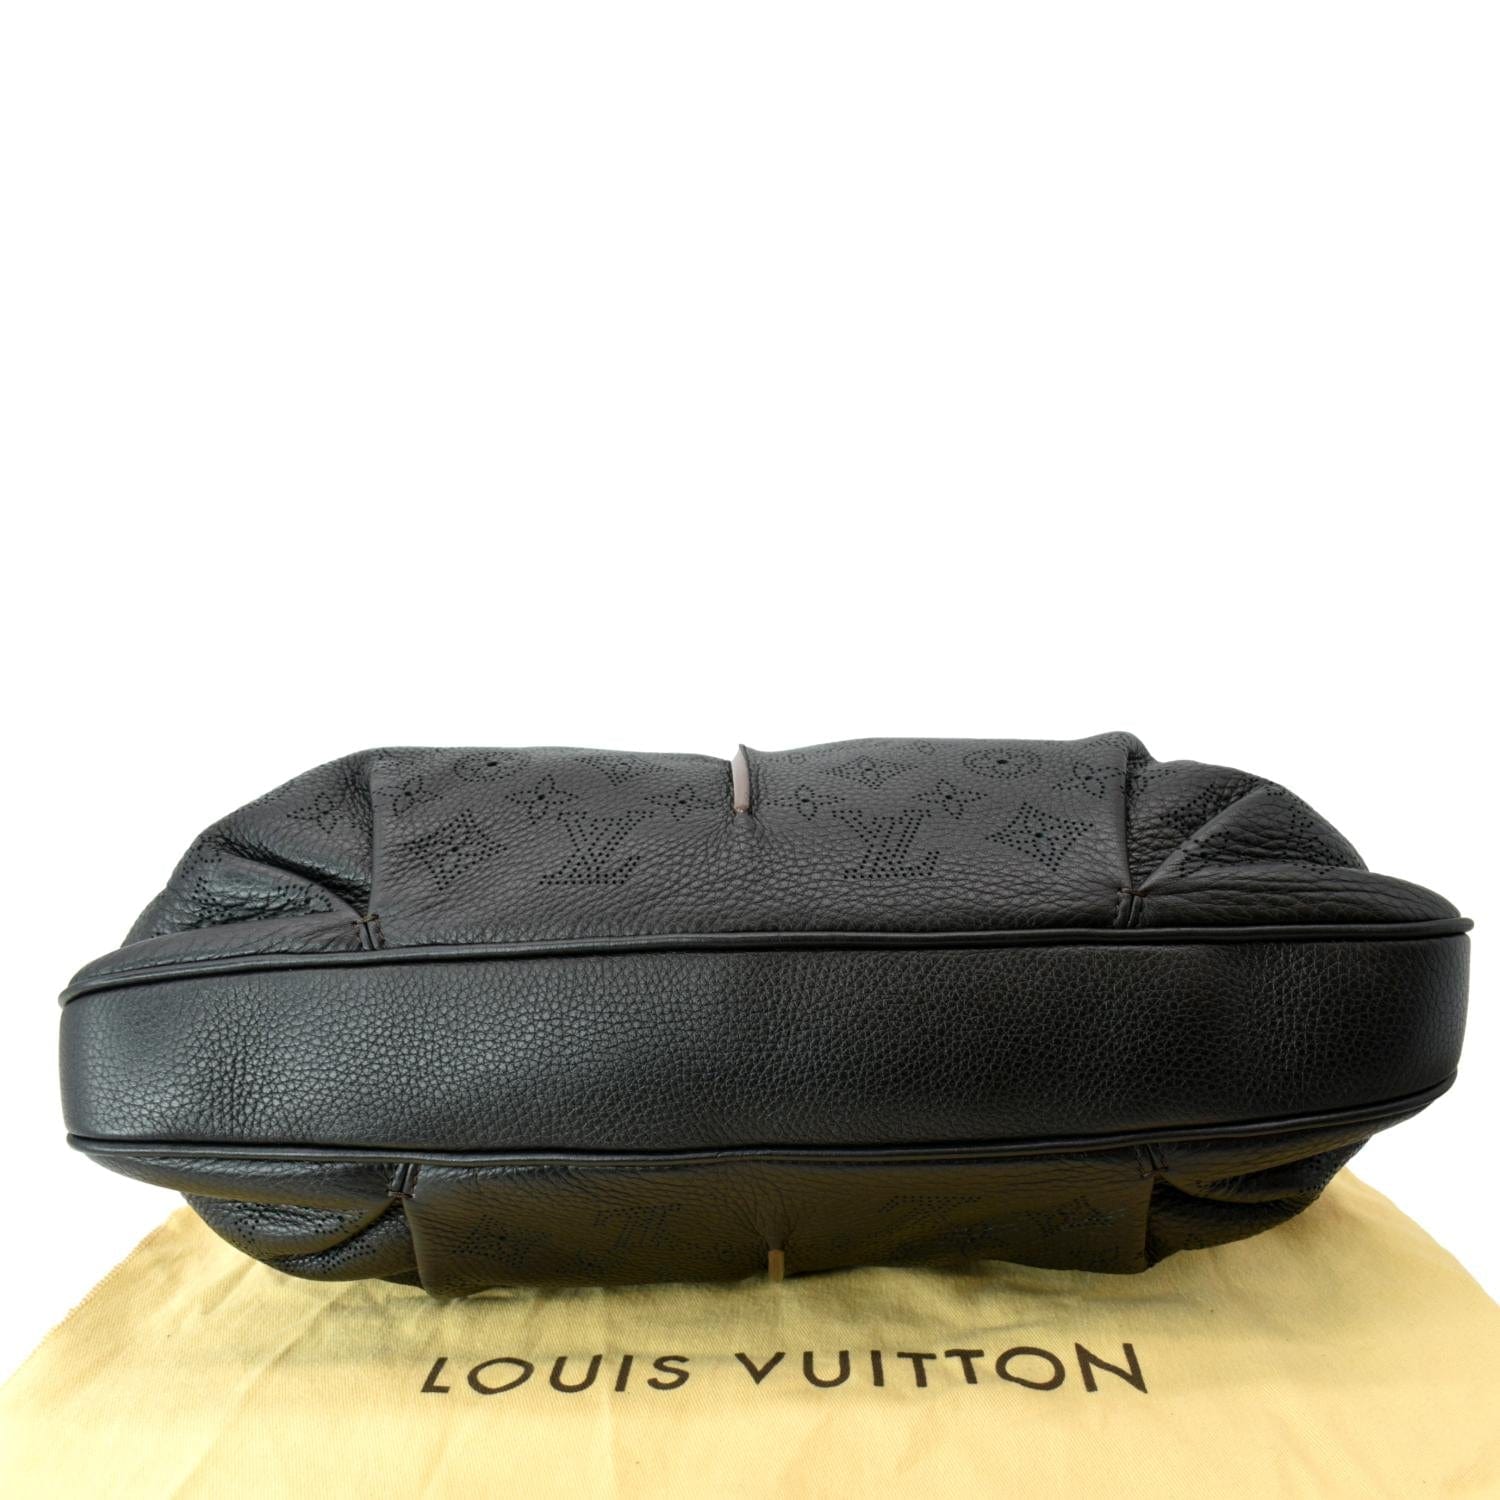 Louis Vuitton Monogram Mahina Selene MM - Black Hobos, Handbags - LOU719984